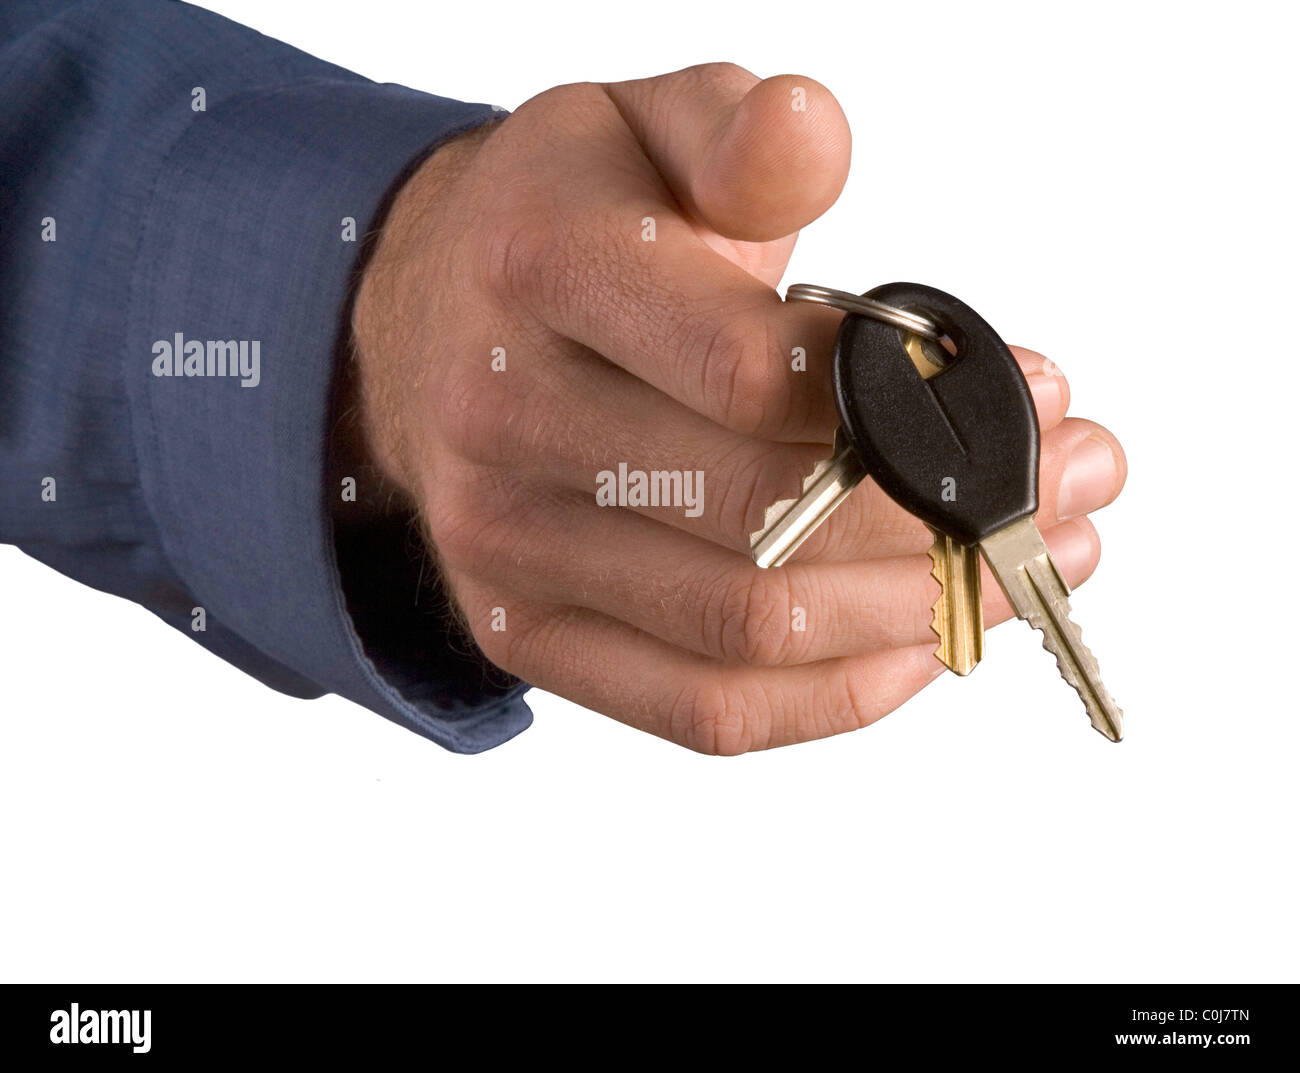 Handing over the car keys. Stock Photo